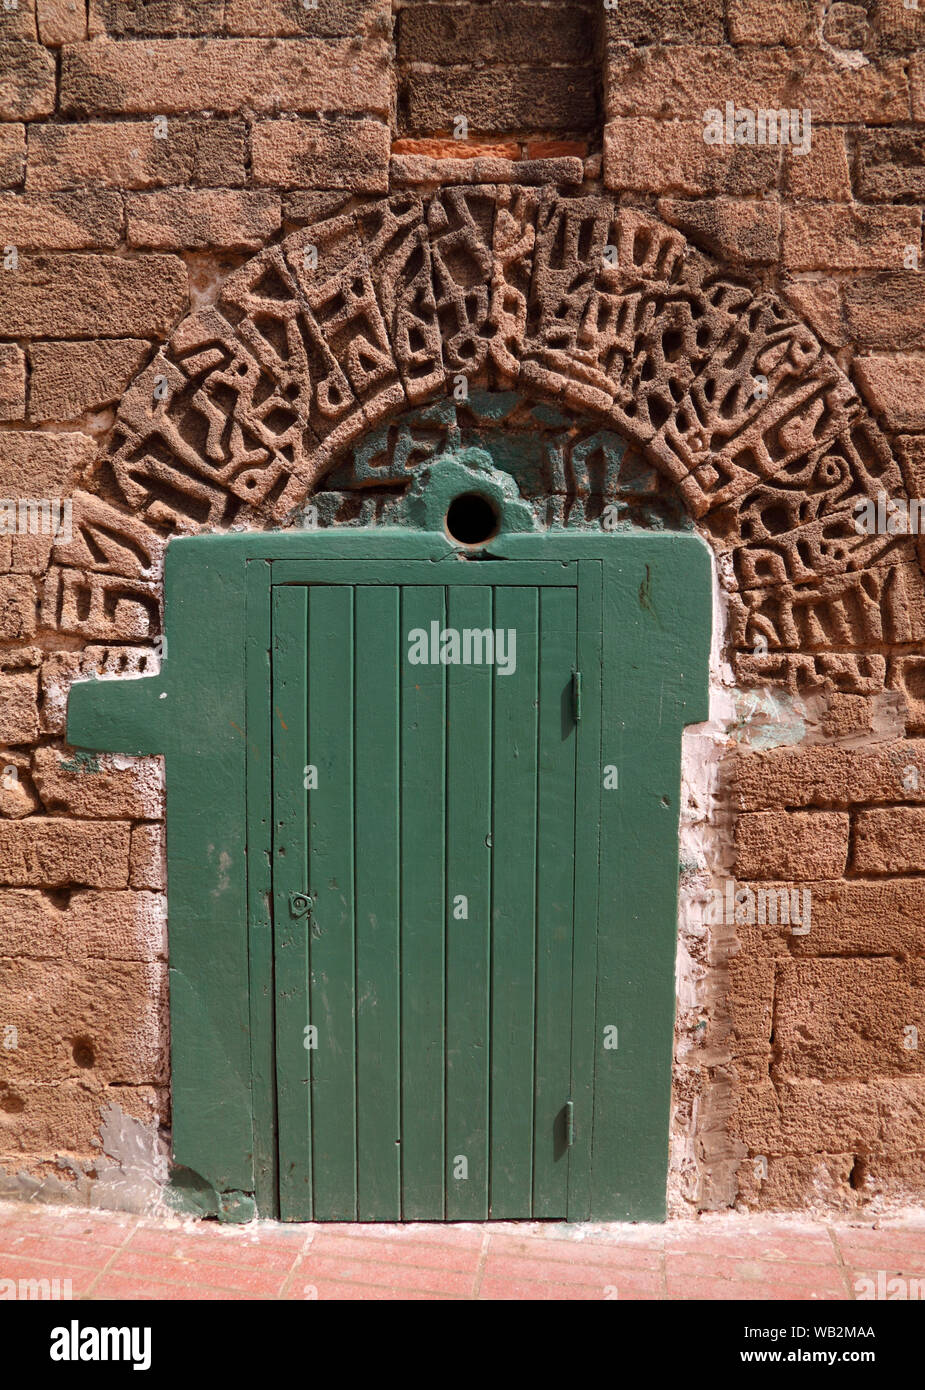 Il Marocco, El Jadida, bella antica moschea. Dettaglio della porta e la calligrafia Araba scolpiti nella facciata in pietra. UNESCO - Sito Patrimonio dell'umanità. Foto Stock